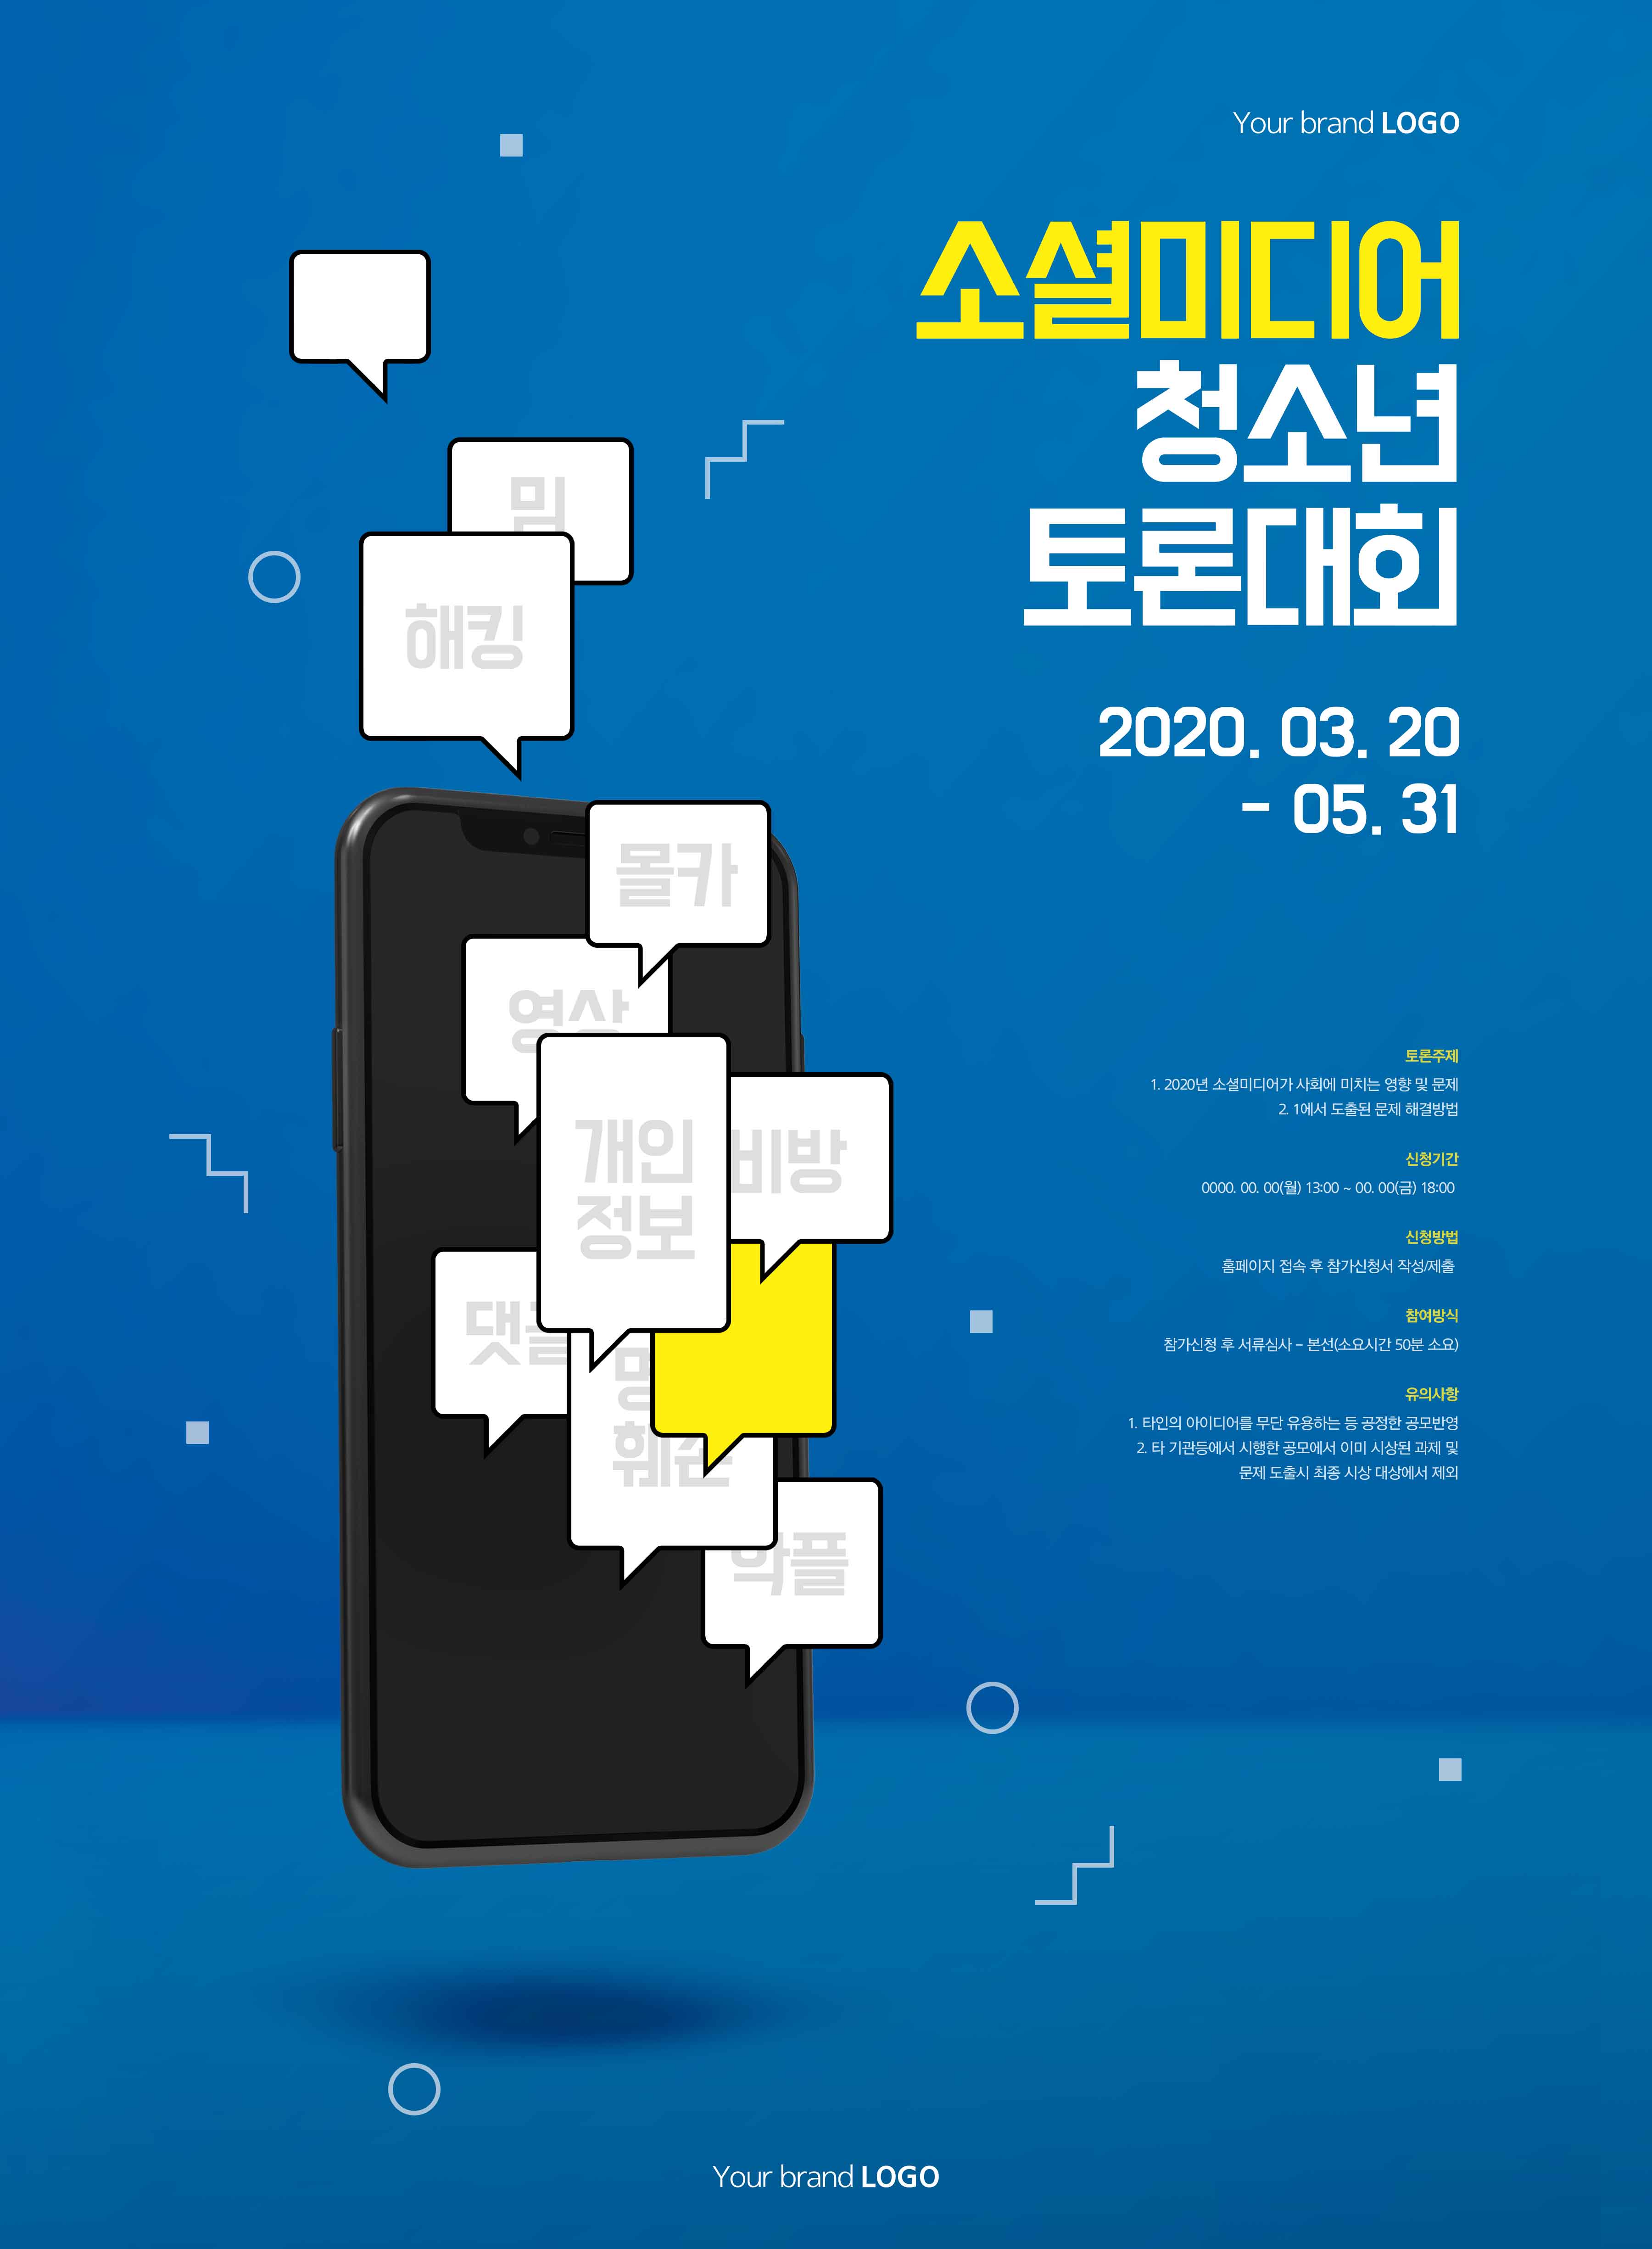 社交辩论比赛活动宣传海报PSD素材第一素材精选韩国素材插图